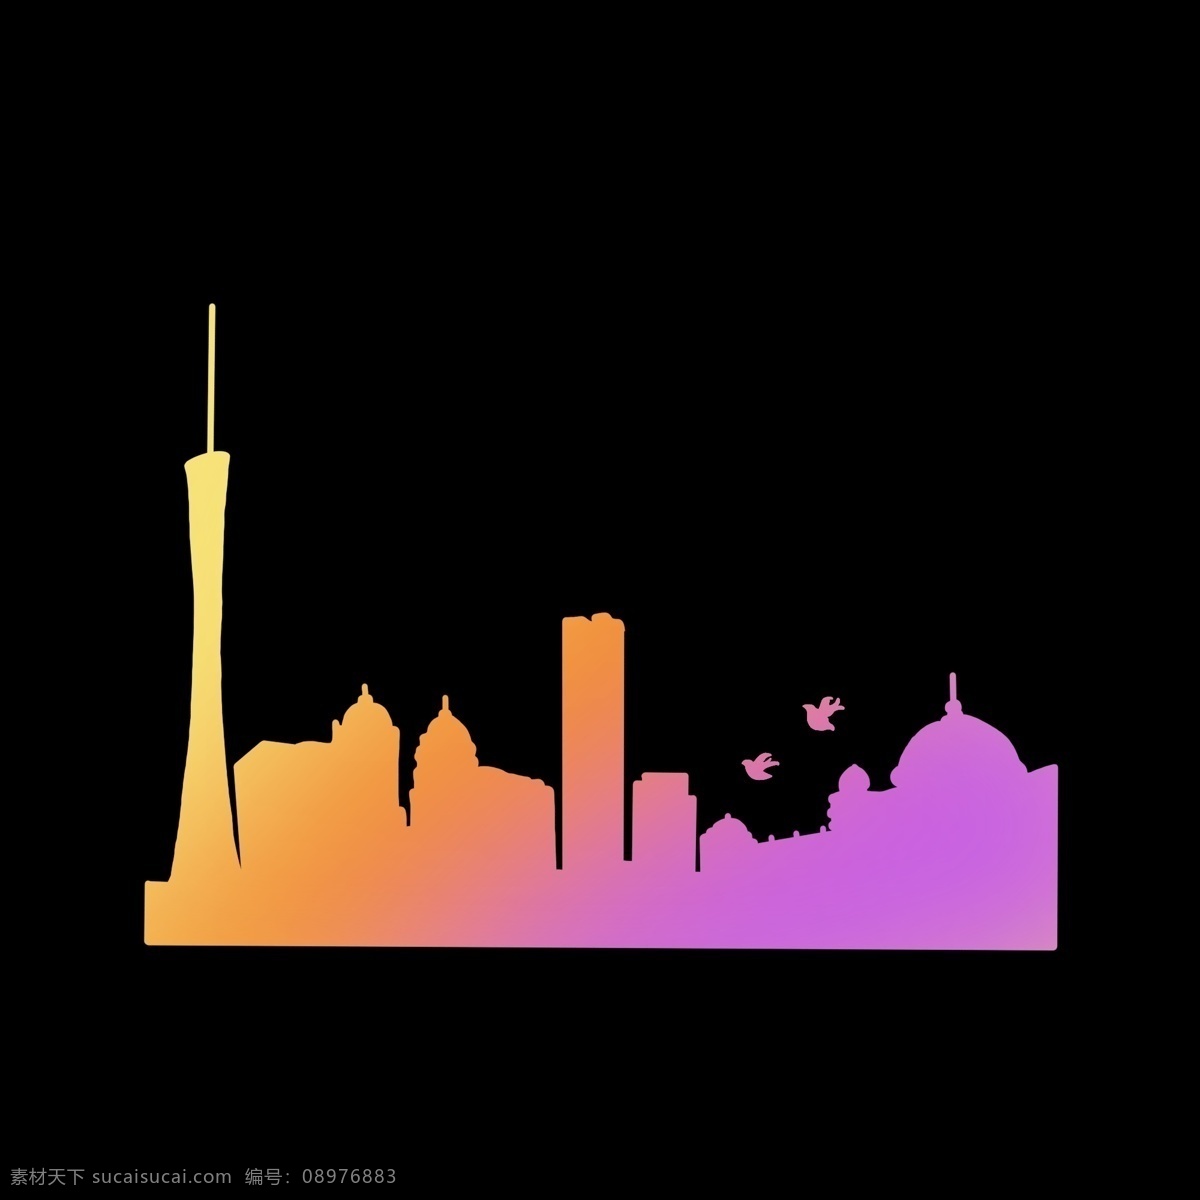 暖色 渐变 上海 城市 剪影 彩色 形象 几何图形 卡通 简洁 简单 简约 中国 城市标志